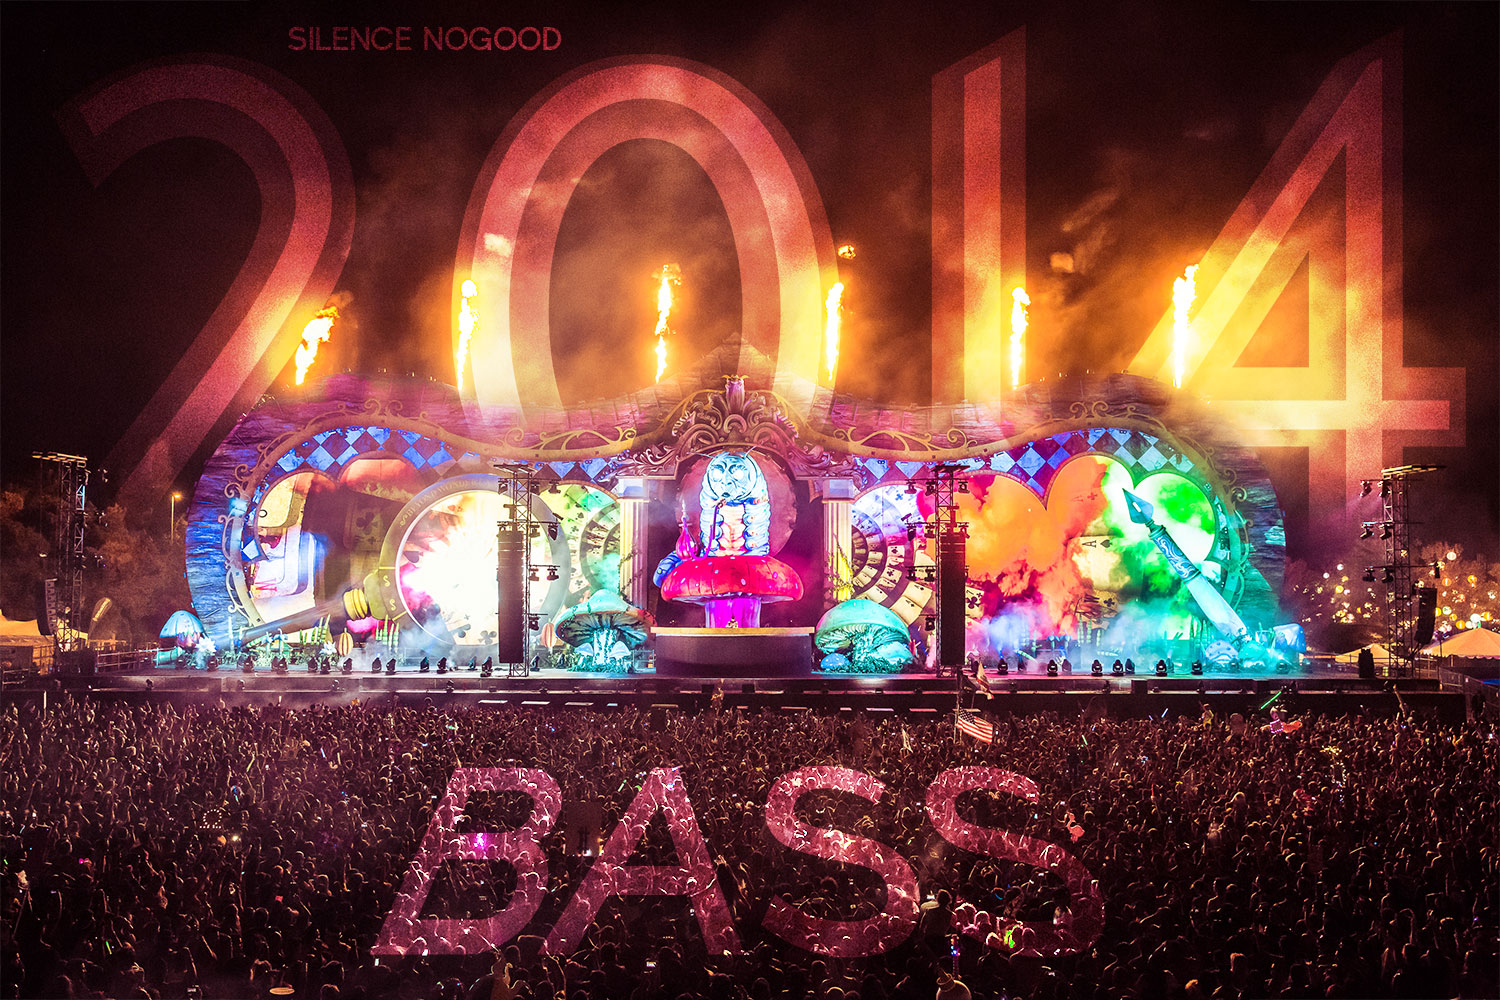 Bass Music 2014